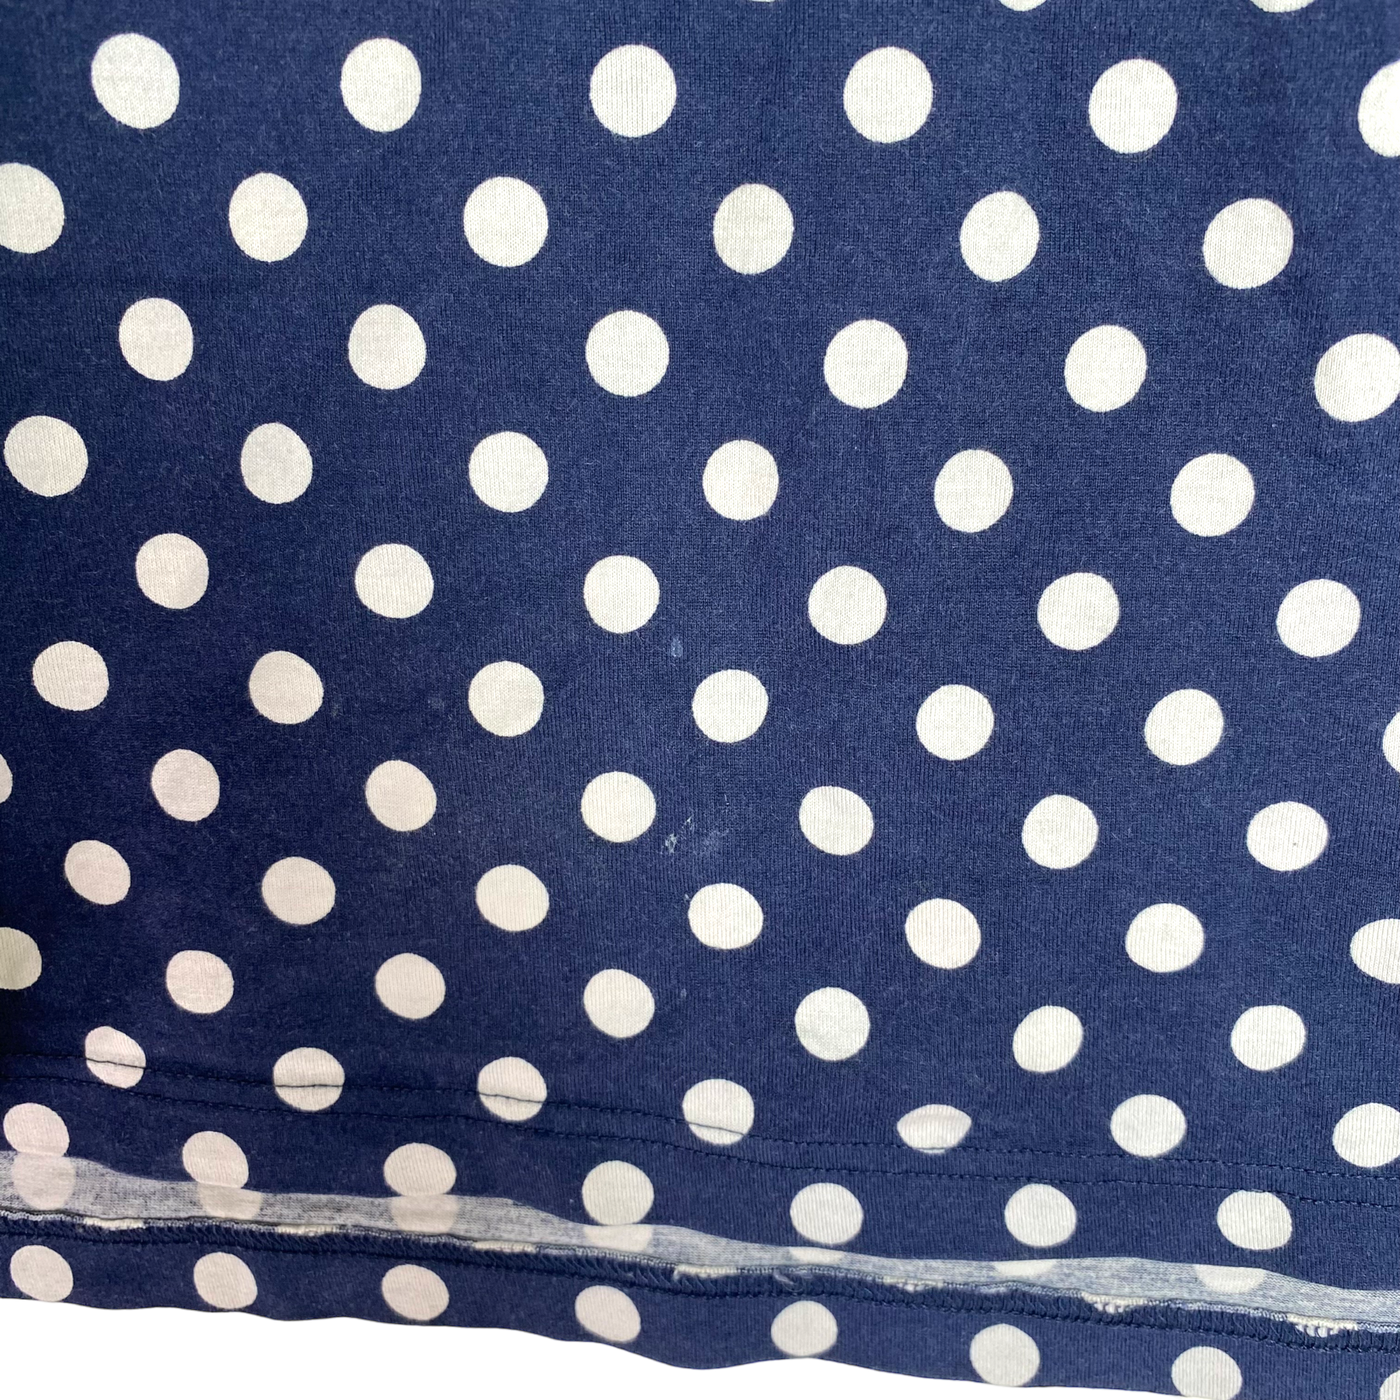 Marimekko shirt, polkadot | woman S